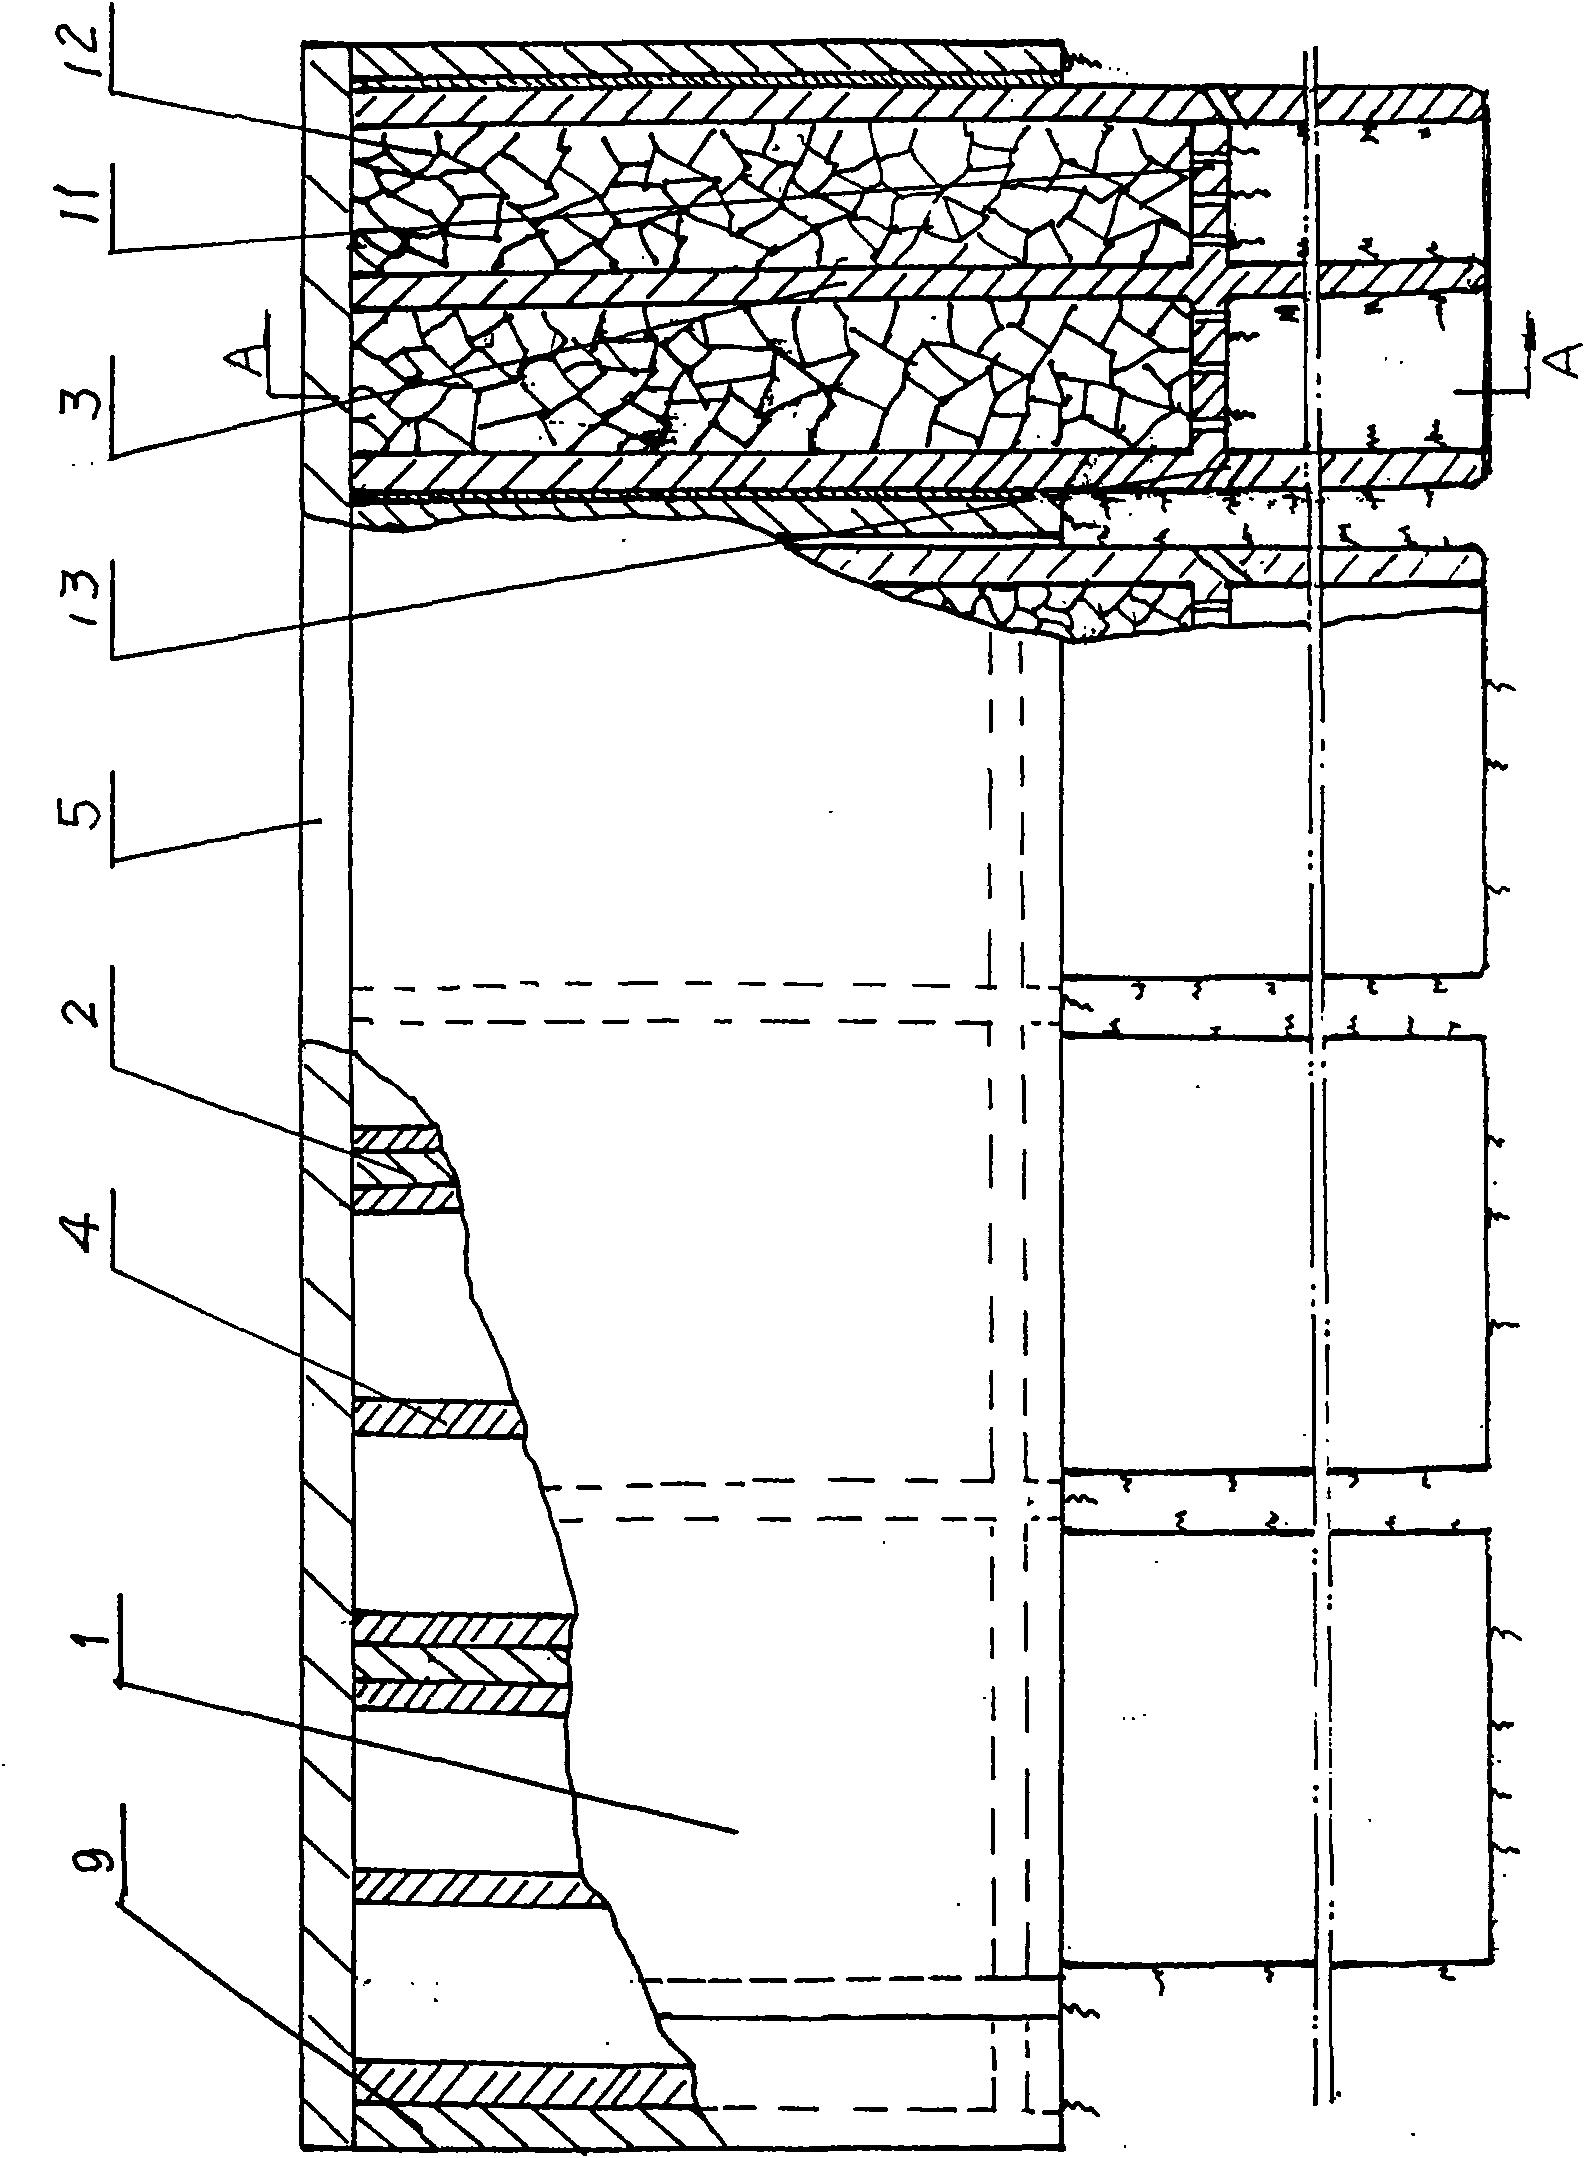 Method for building harbor wharf based on soft soil